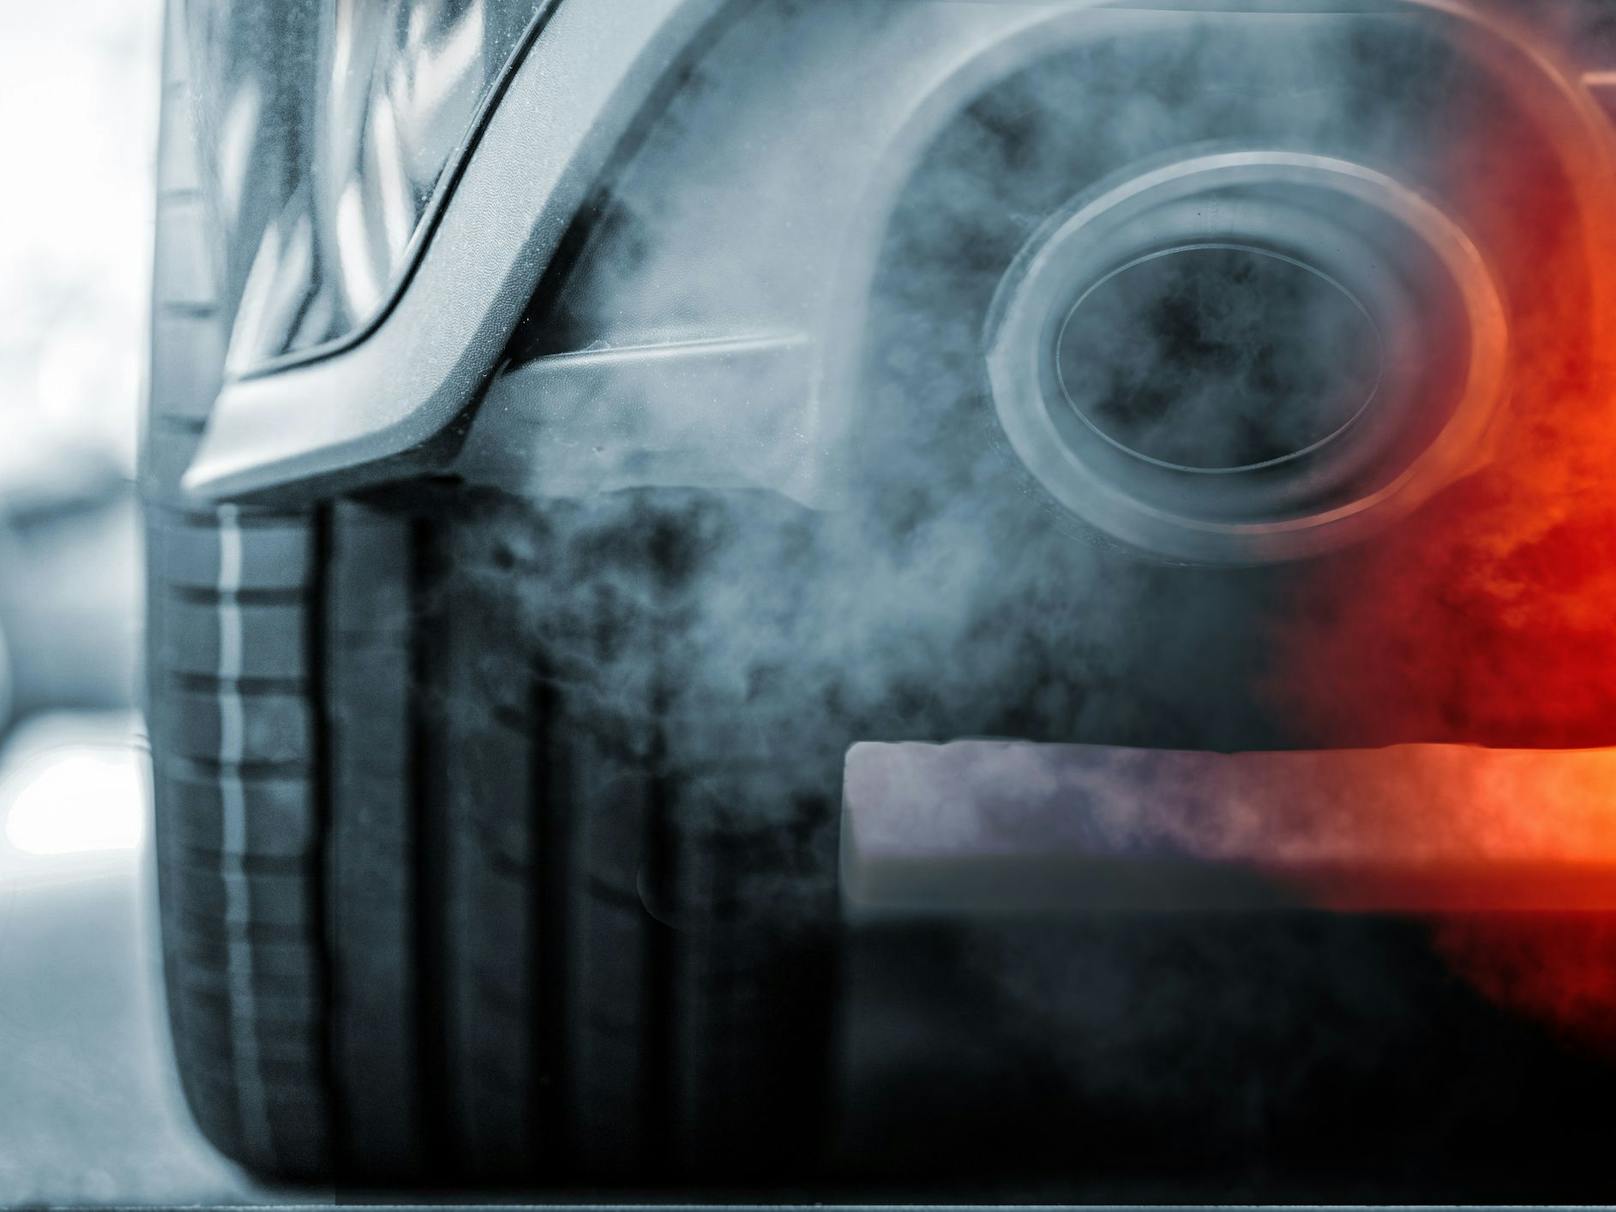 Die EU-Staaten sollten am Dienstag eine endgültige Entscheidung über das pauschale Verbot neuer Autos mit Verbrennungsmotor ab 2035 treffen. Diese wurde jetzt verschoben.